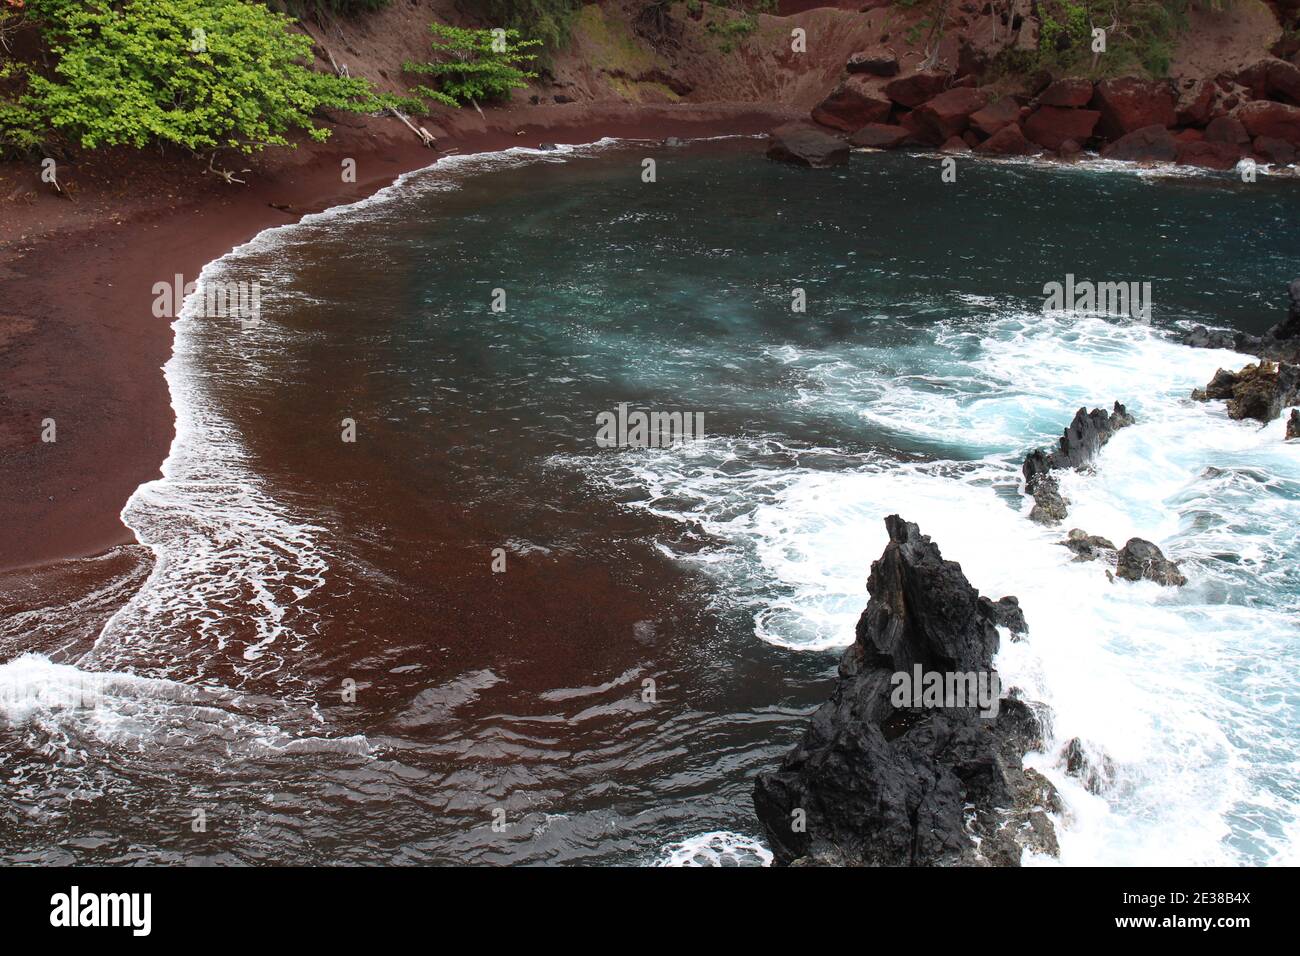 Les eaux turquoises de l'océan Pacifique rencontrent le sable rouge de la baie Kaihalulu à Hana, Maui, Hawaii, États-Unis Banque D'Images